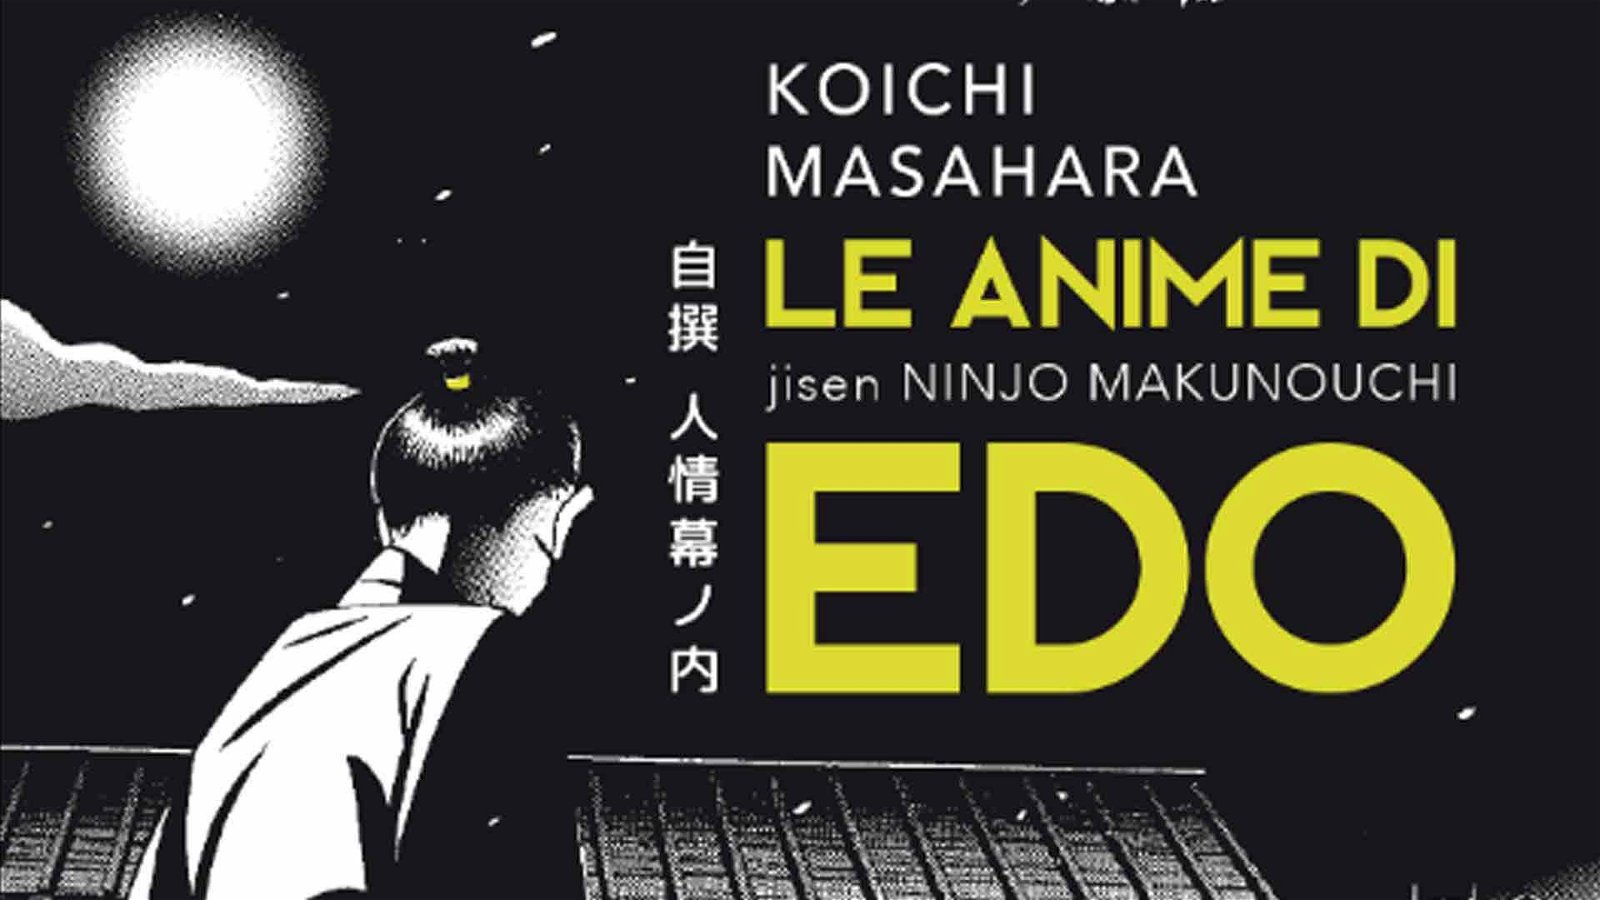 Immagine di Le anime di Edo – Koichi Masahara: La recensione